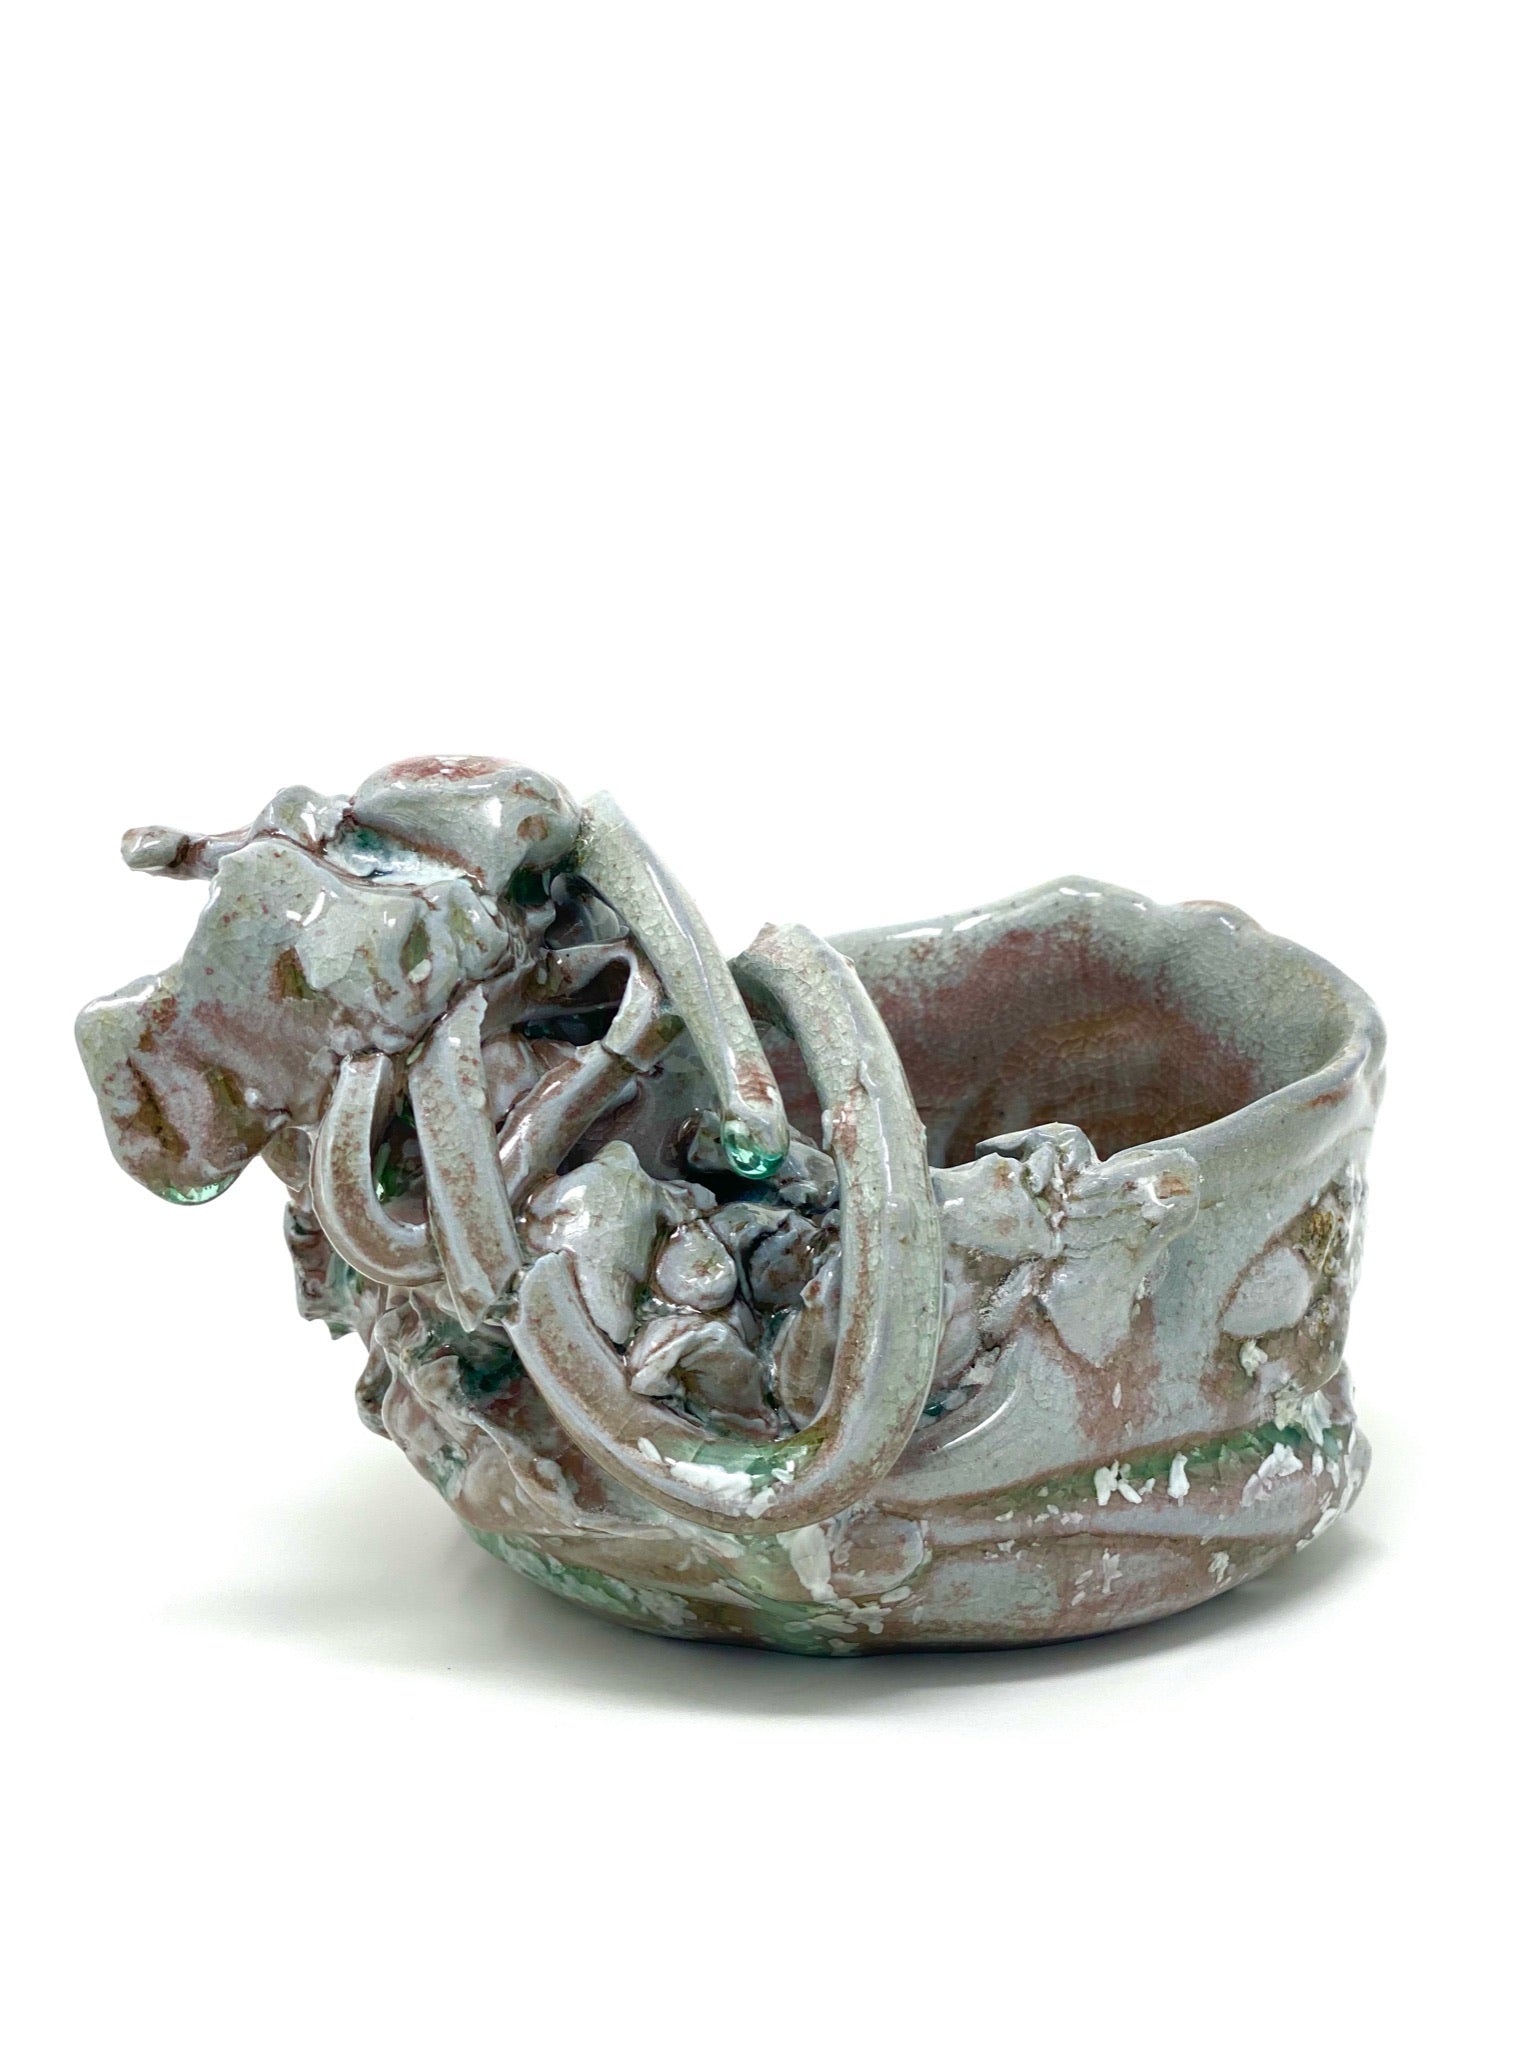 Sculptural Tea Bowl